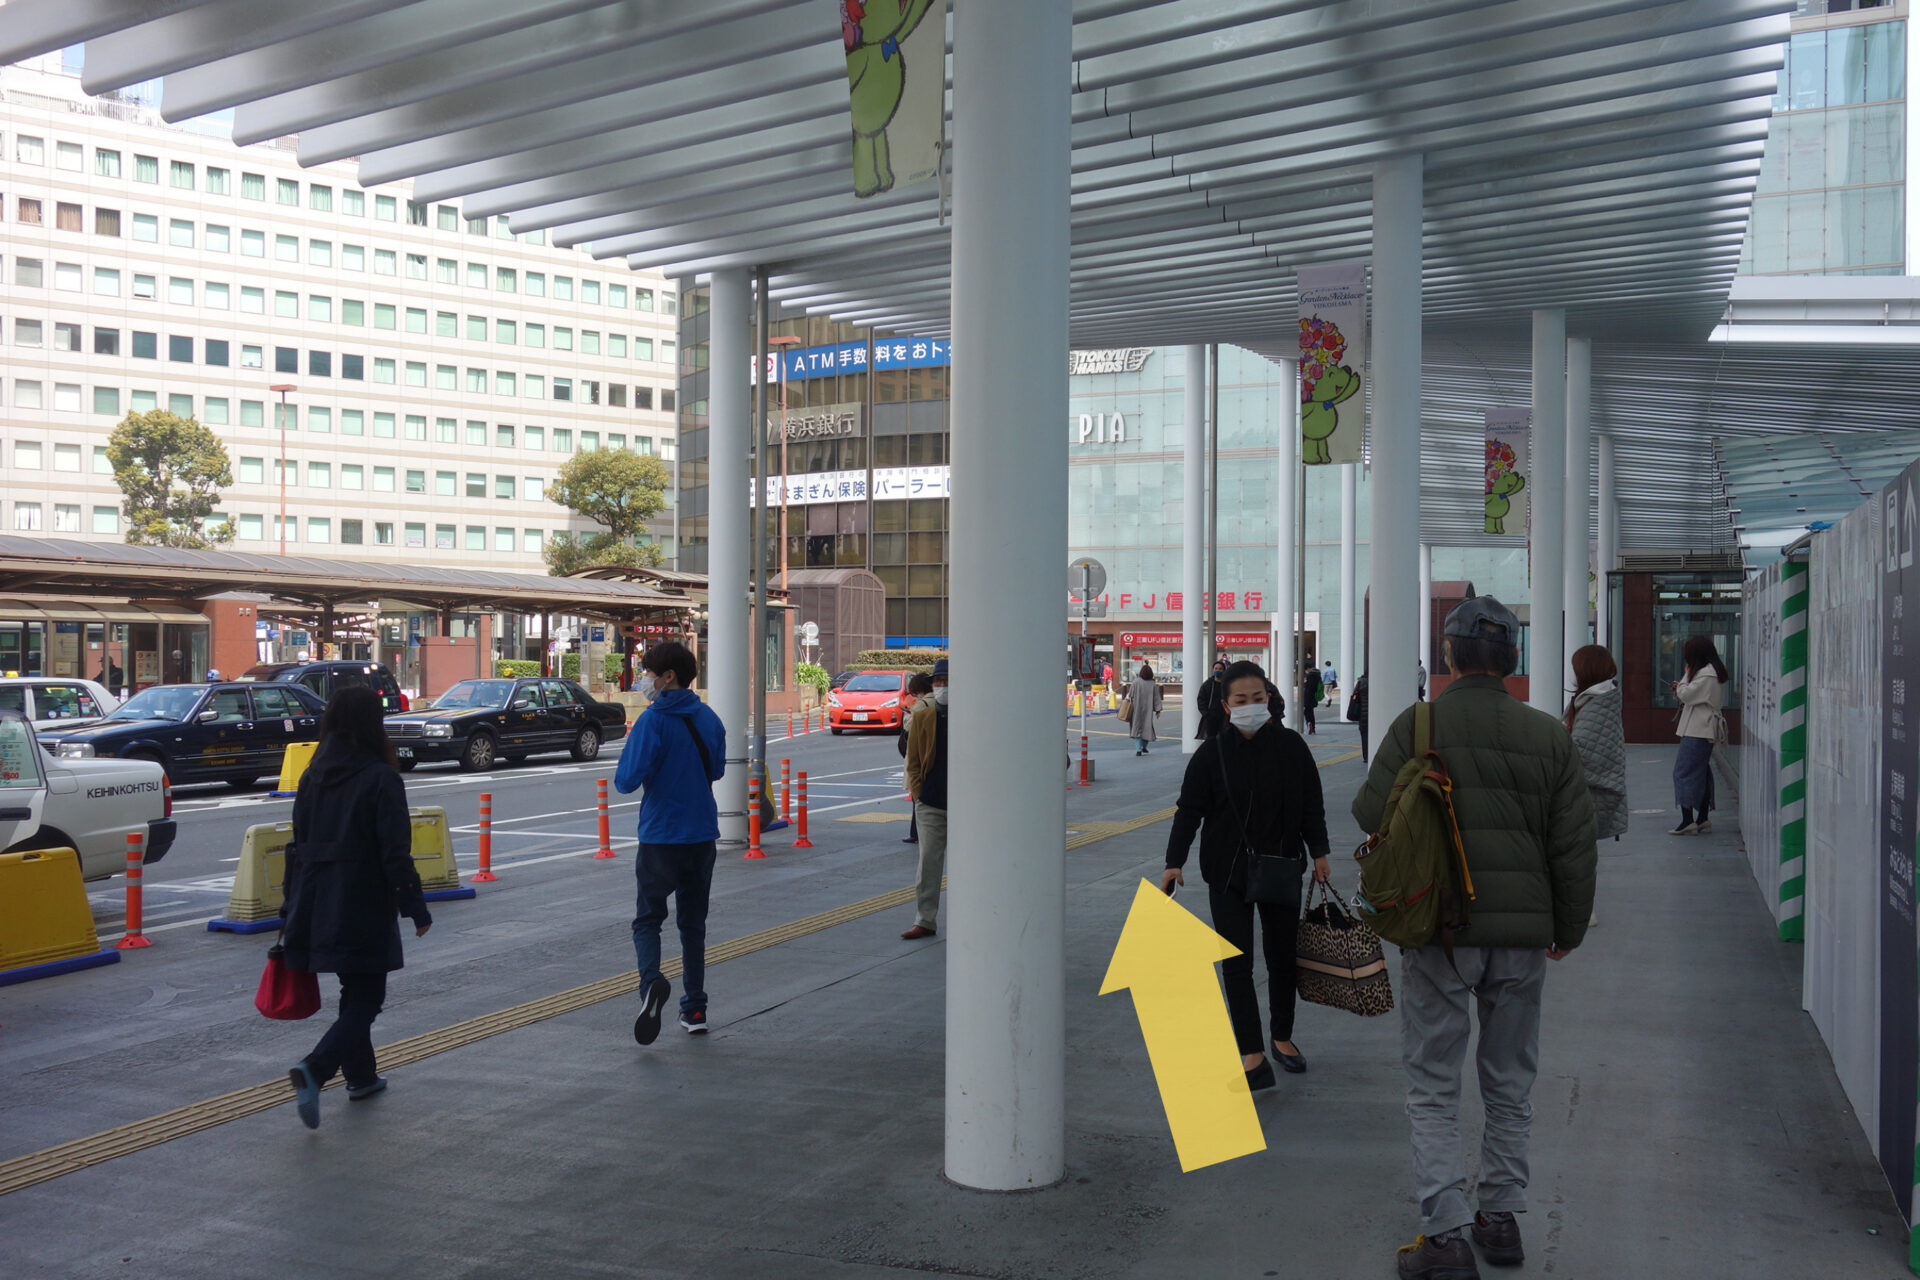 結婚相談所ハッピーコネクトまでの道案内図、横浜駅地上出口を出てすぐ、矢印